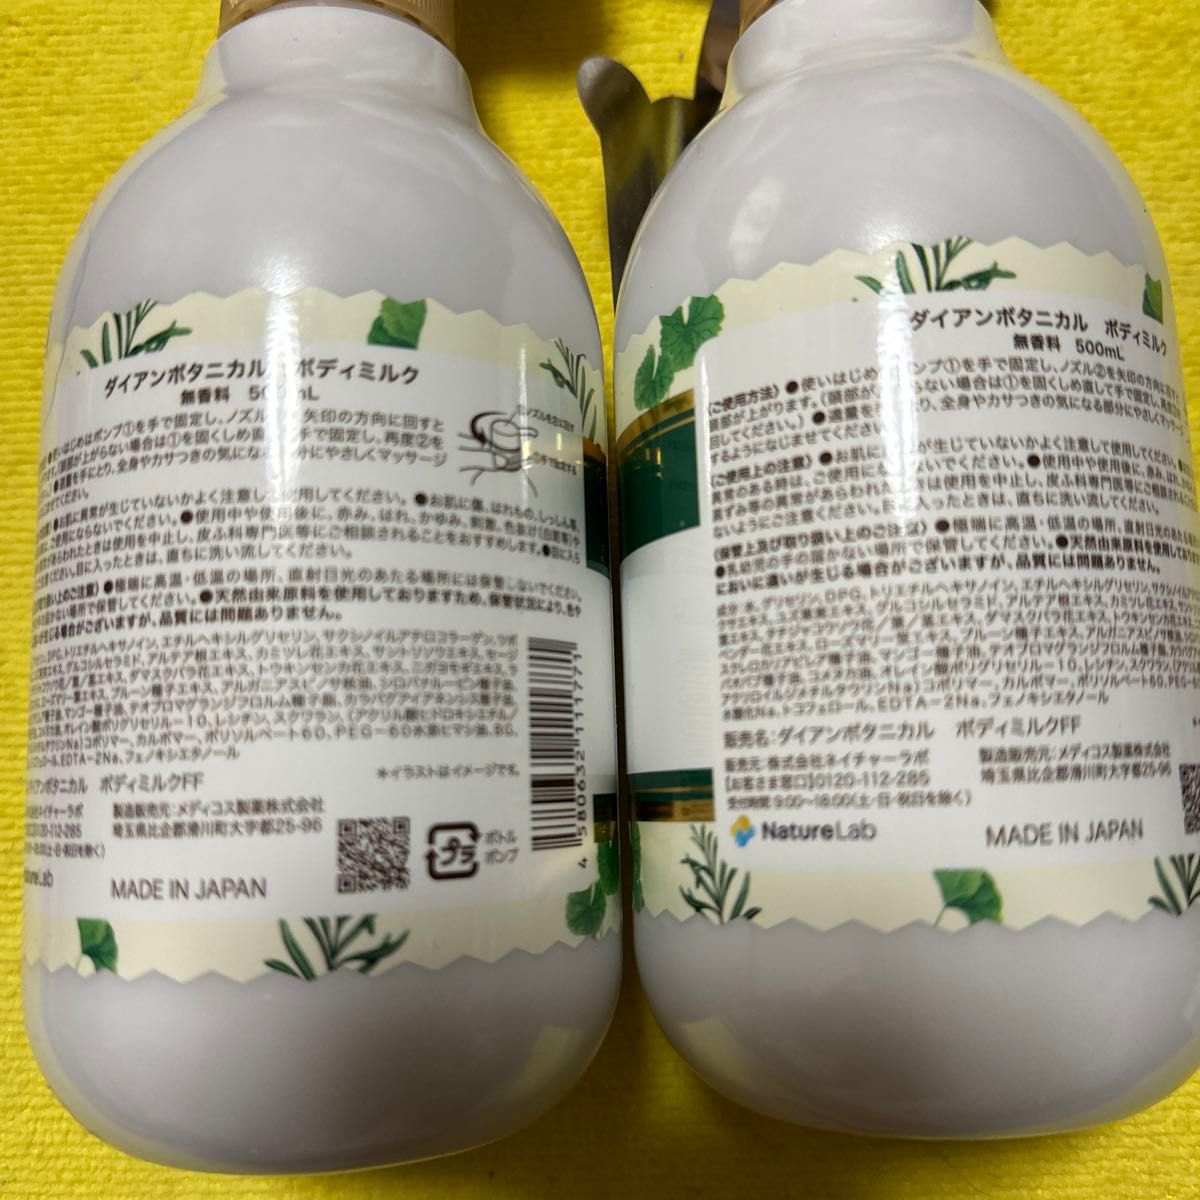 【2個】ダイアン　ボタニカル　ボディミルク　無香料500ml